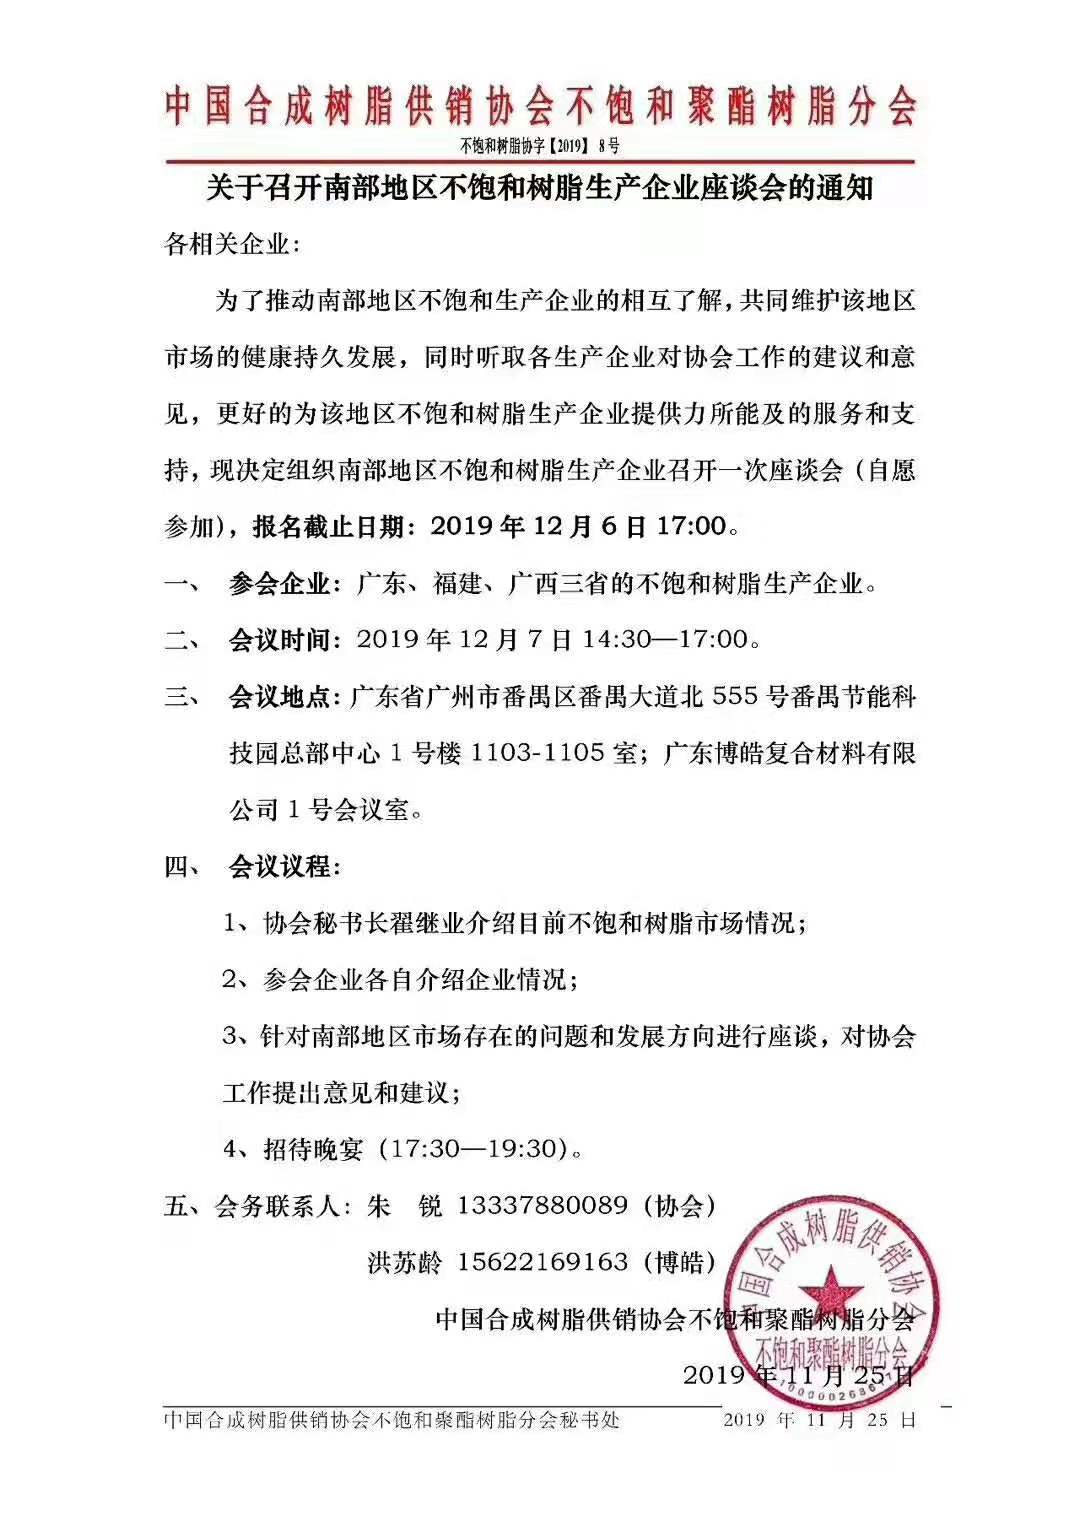 中国南部地区不饱和树脂生产企业座谈会将于12月7日在广东博皓复合材料有限公司召开